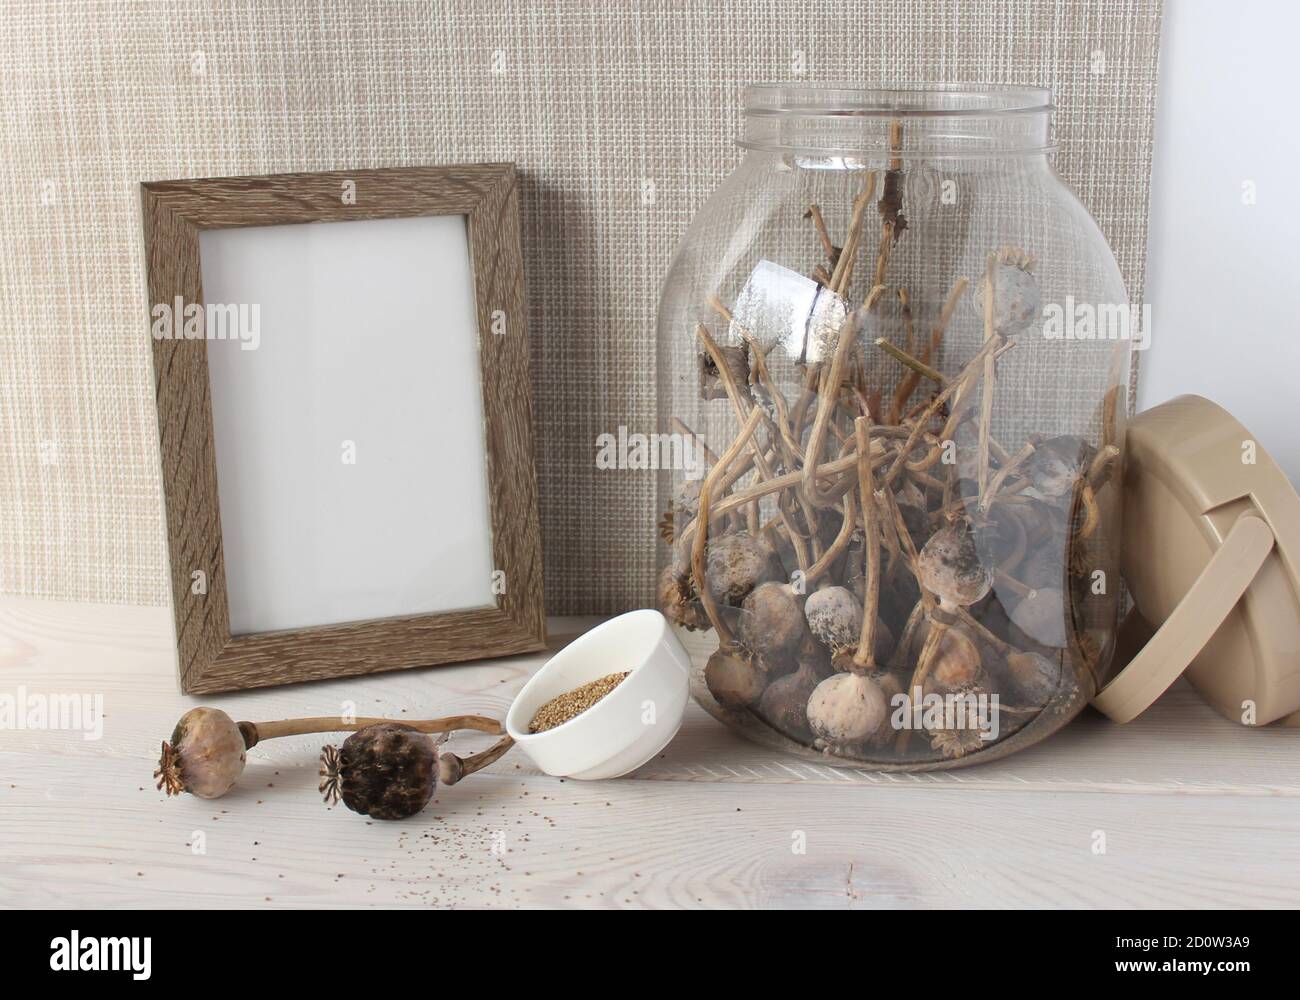 Glas mit trockenen Mohnköpfen, Mohn Samen in einem weißen Cup, Holz Fotorahmen. Stockfoto